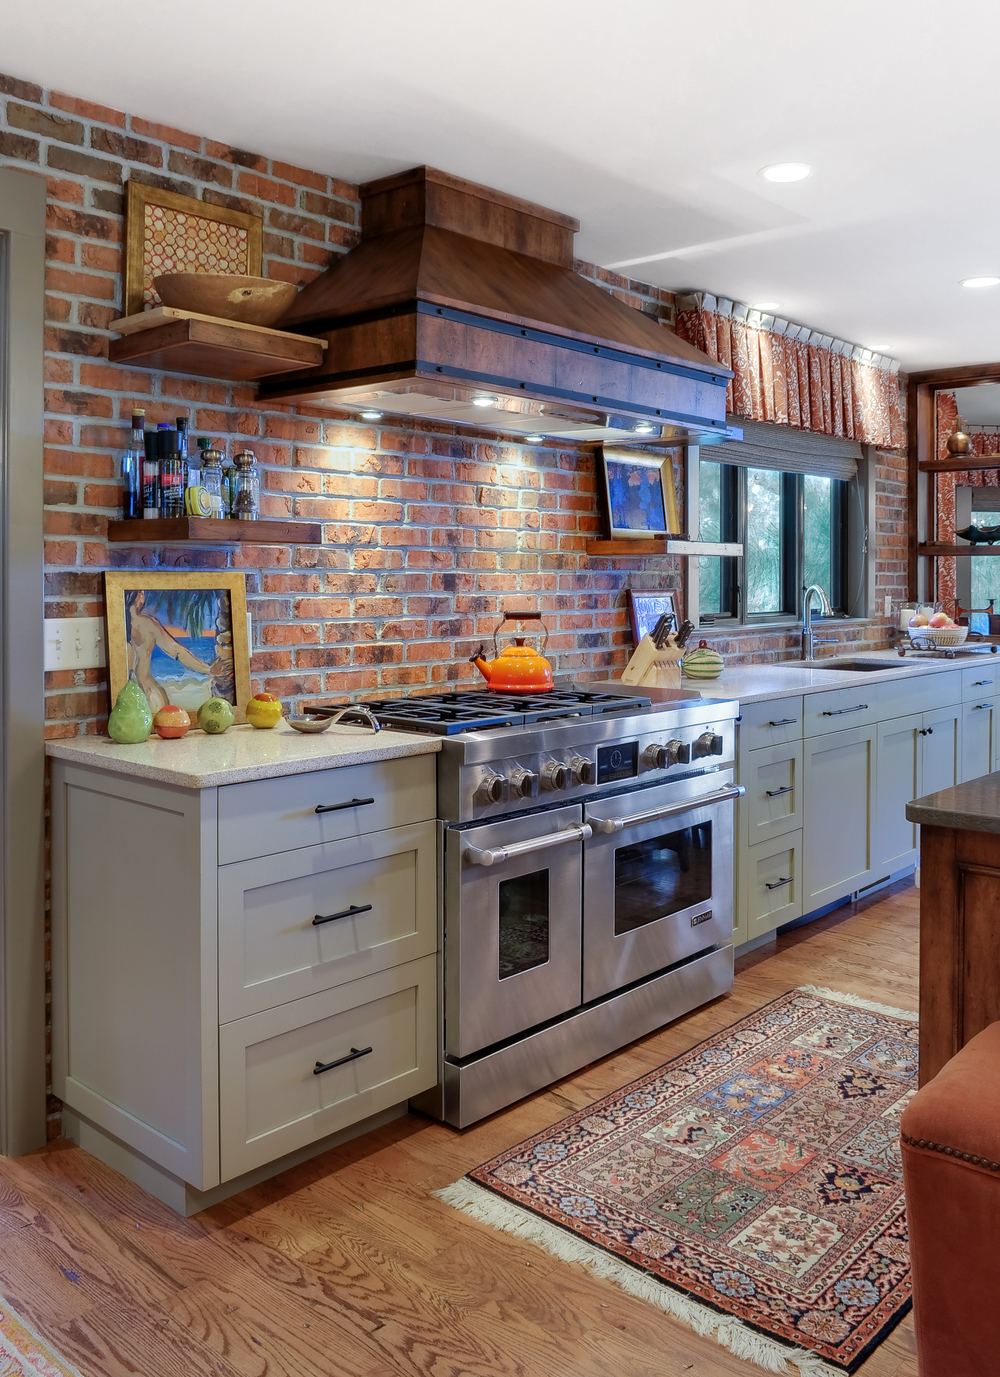 Warm brick kitchen from brick kitchen